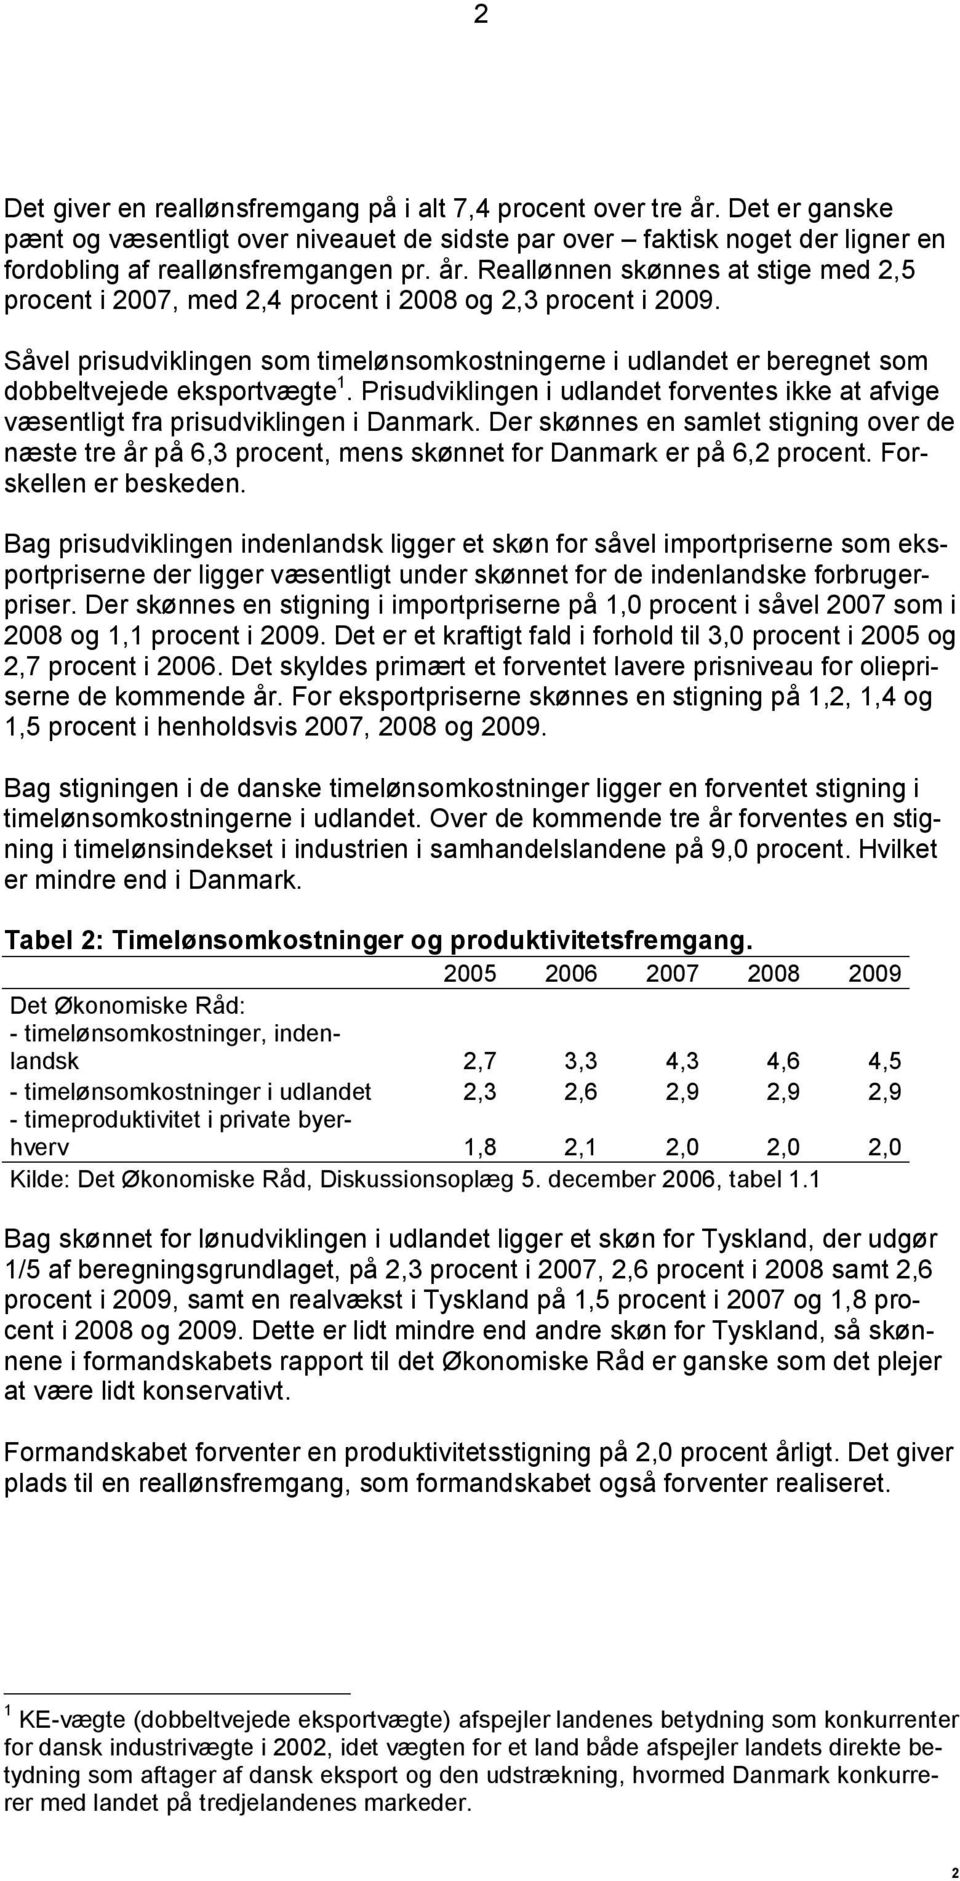 Der skønnes en samlet stigning over de næste tre år på 6,3 procent, mens skønnet for Danmark er på 6,2 procent. Forskellen er beskeden.